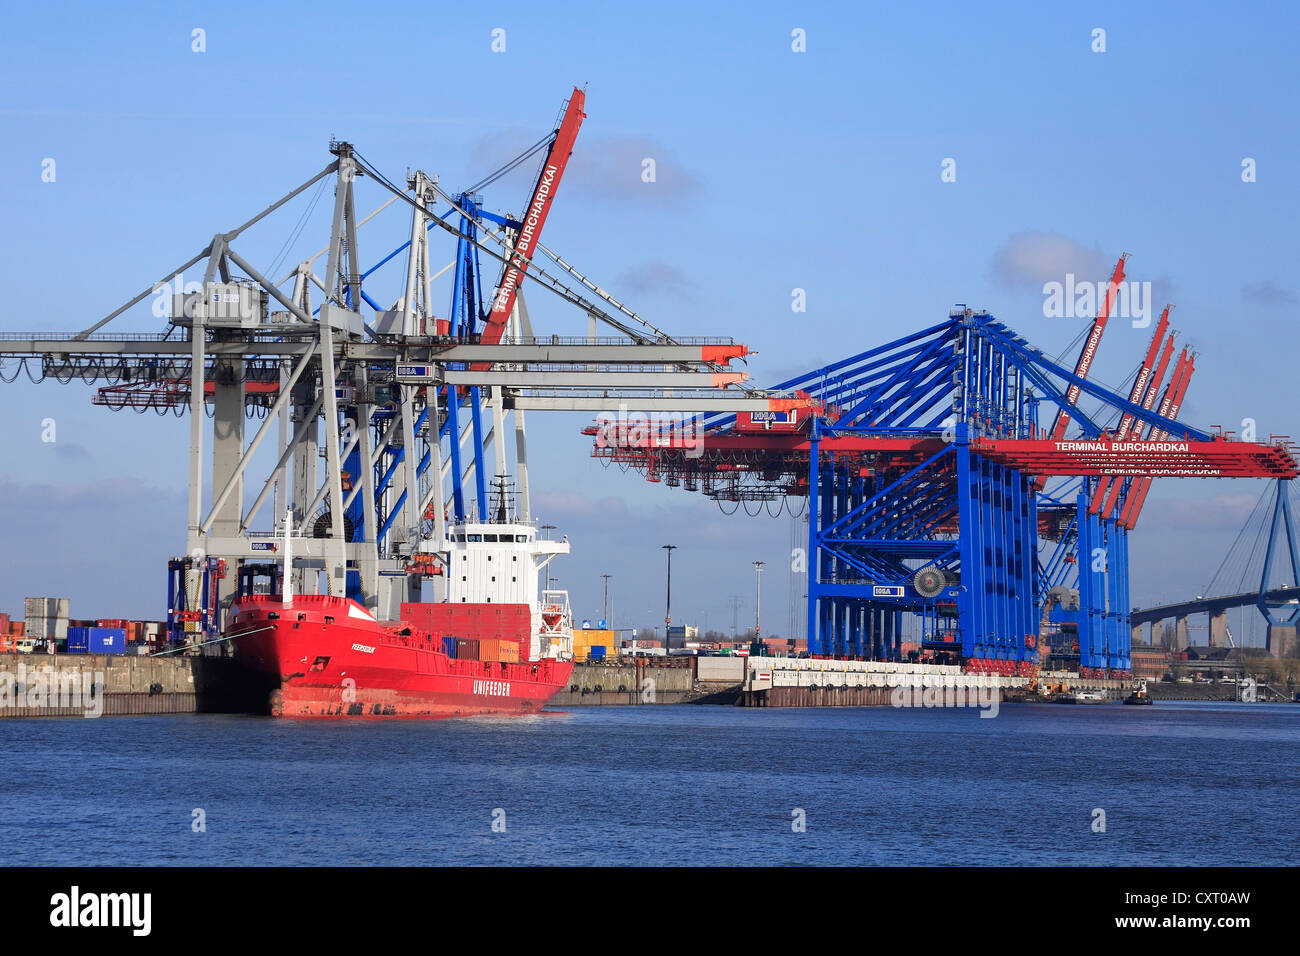 Feederschiff, Burchhardkai Containerterminal, der Hamburger Hafen, Hamburg, Deutschland, Europa Stockfoto